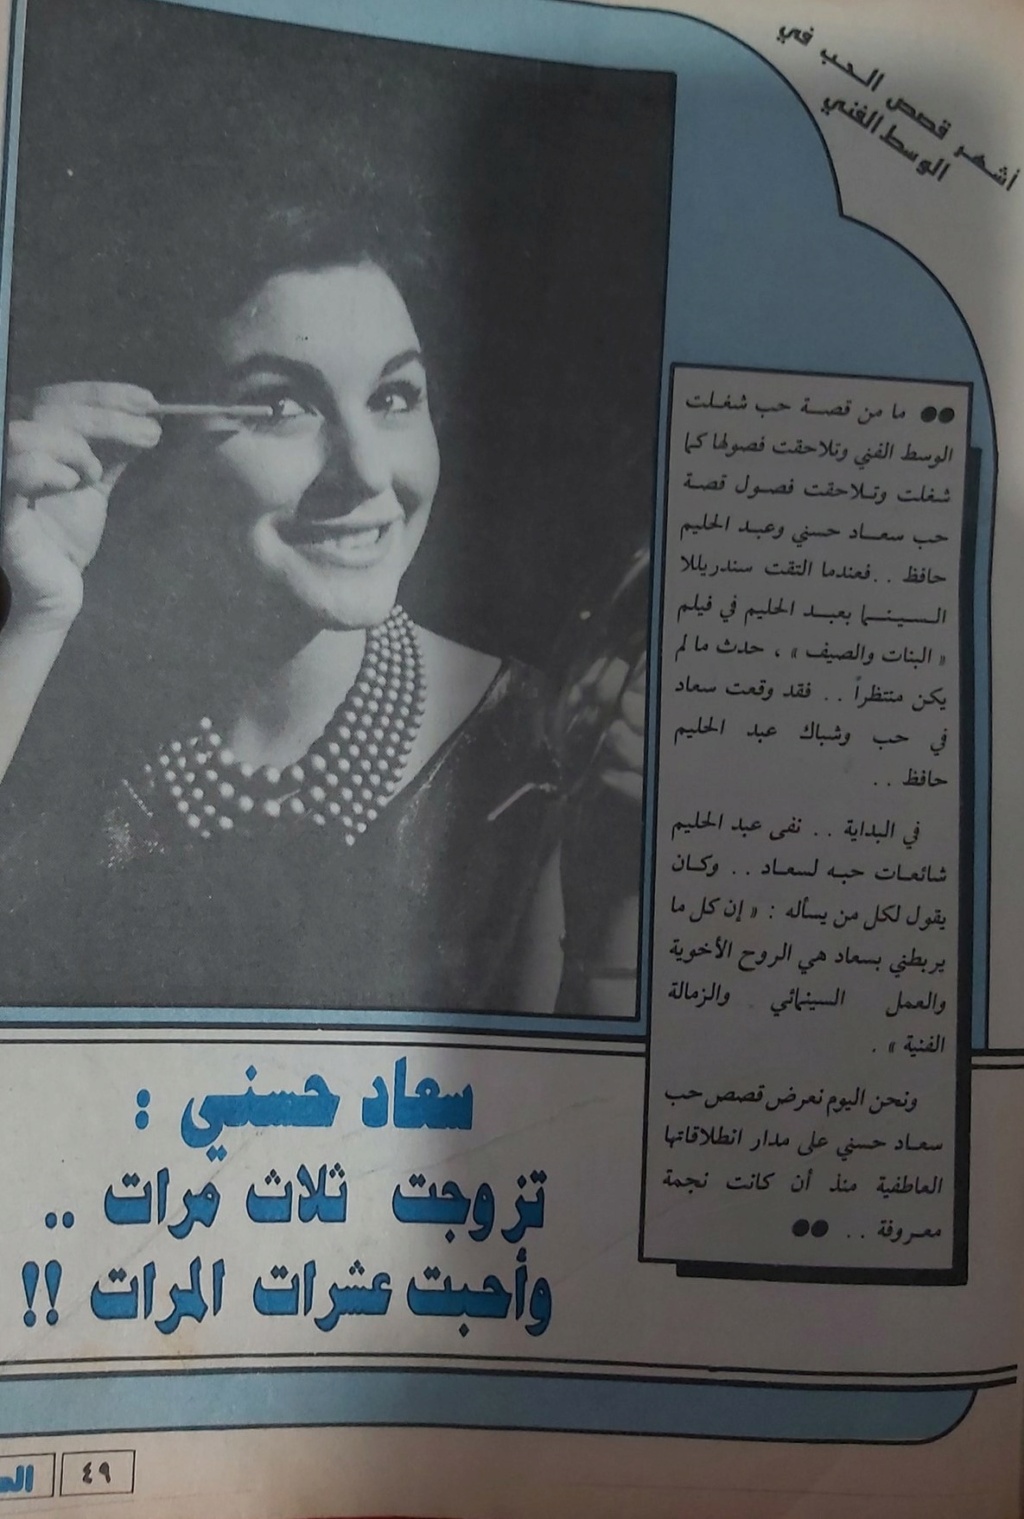 صحفي - مقال صحفي : سعاد حسني .. تزوجت ثلاث مرات .. وأحبت عشرات المرات !! 1987 م 135